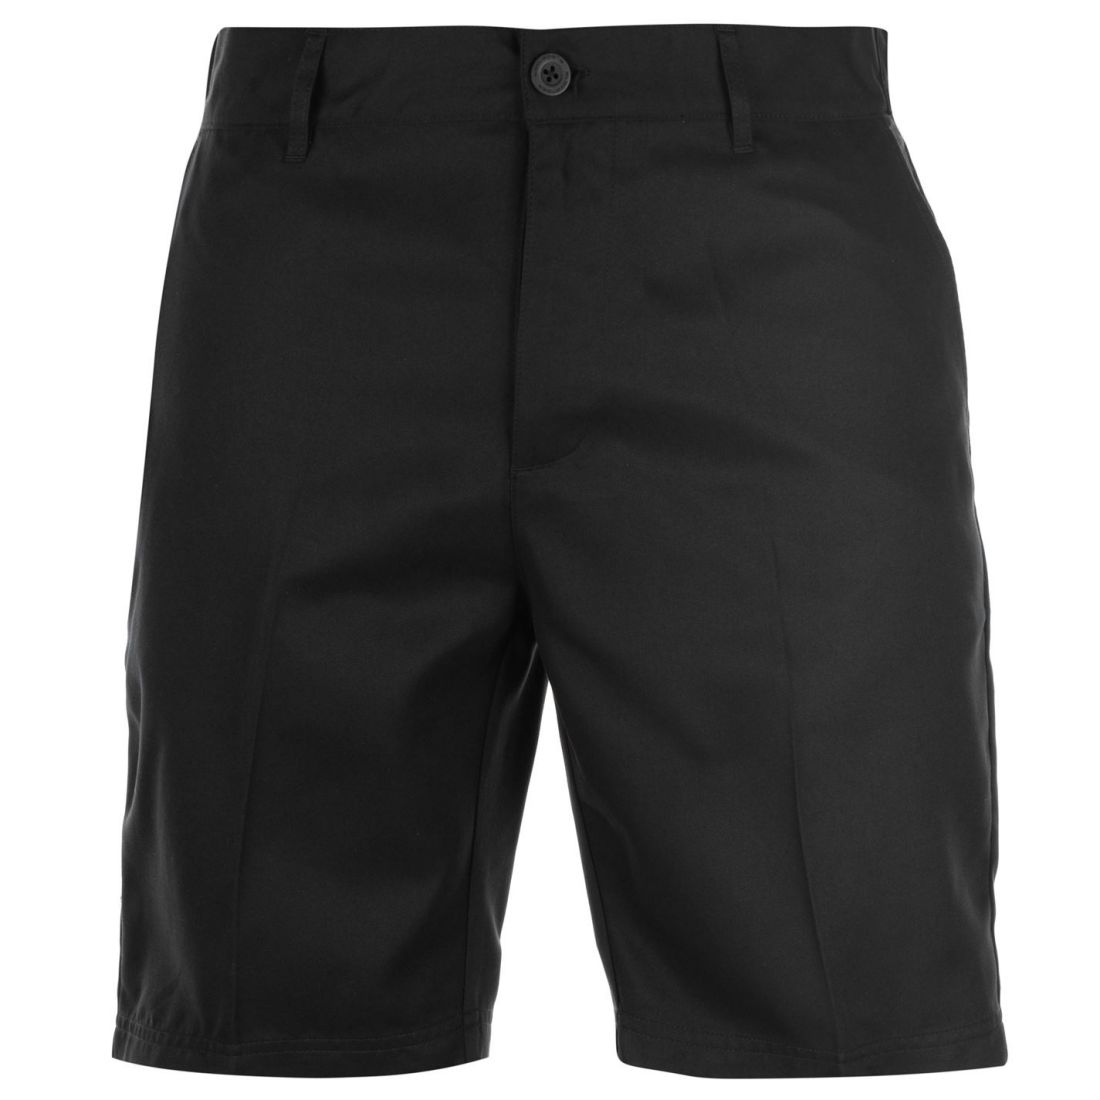 Slazenger Golf Shorts Mens Gents Pants Trousers Bottoms Lightweight Zip ...